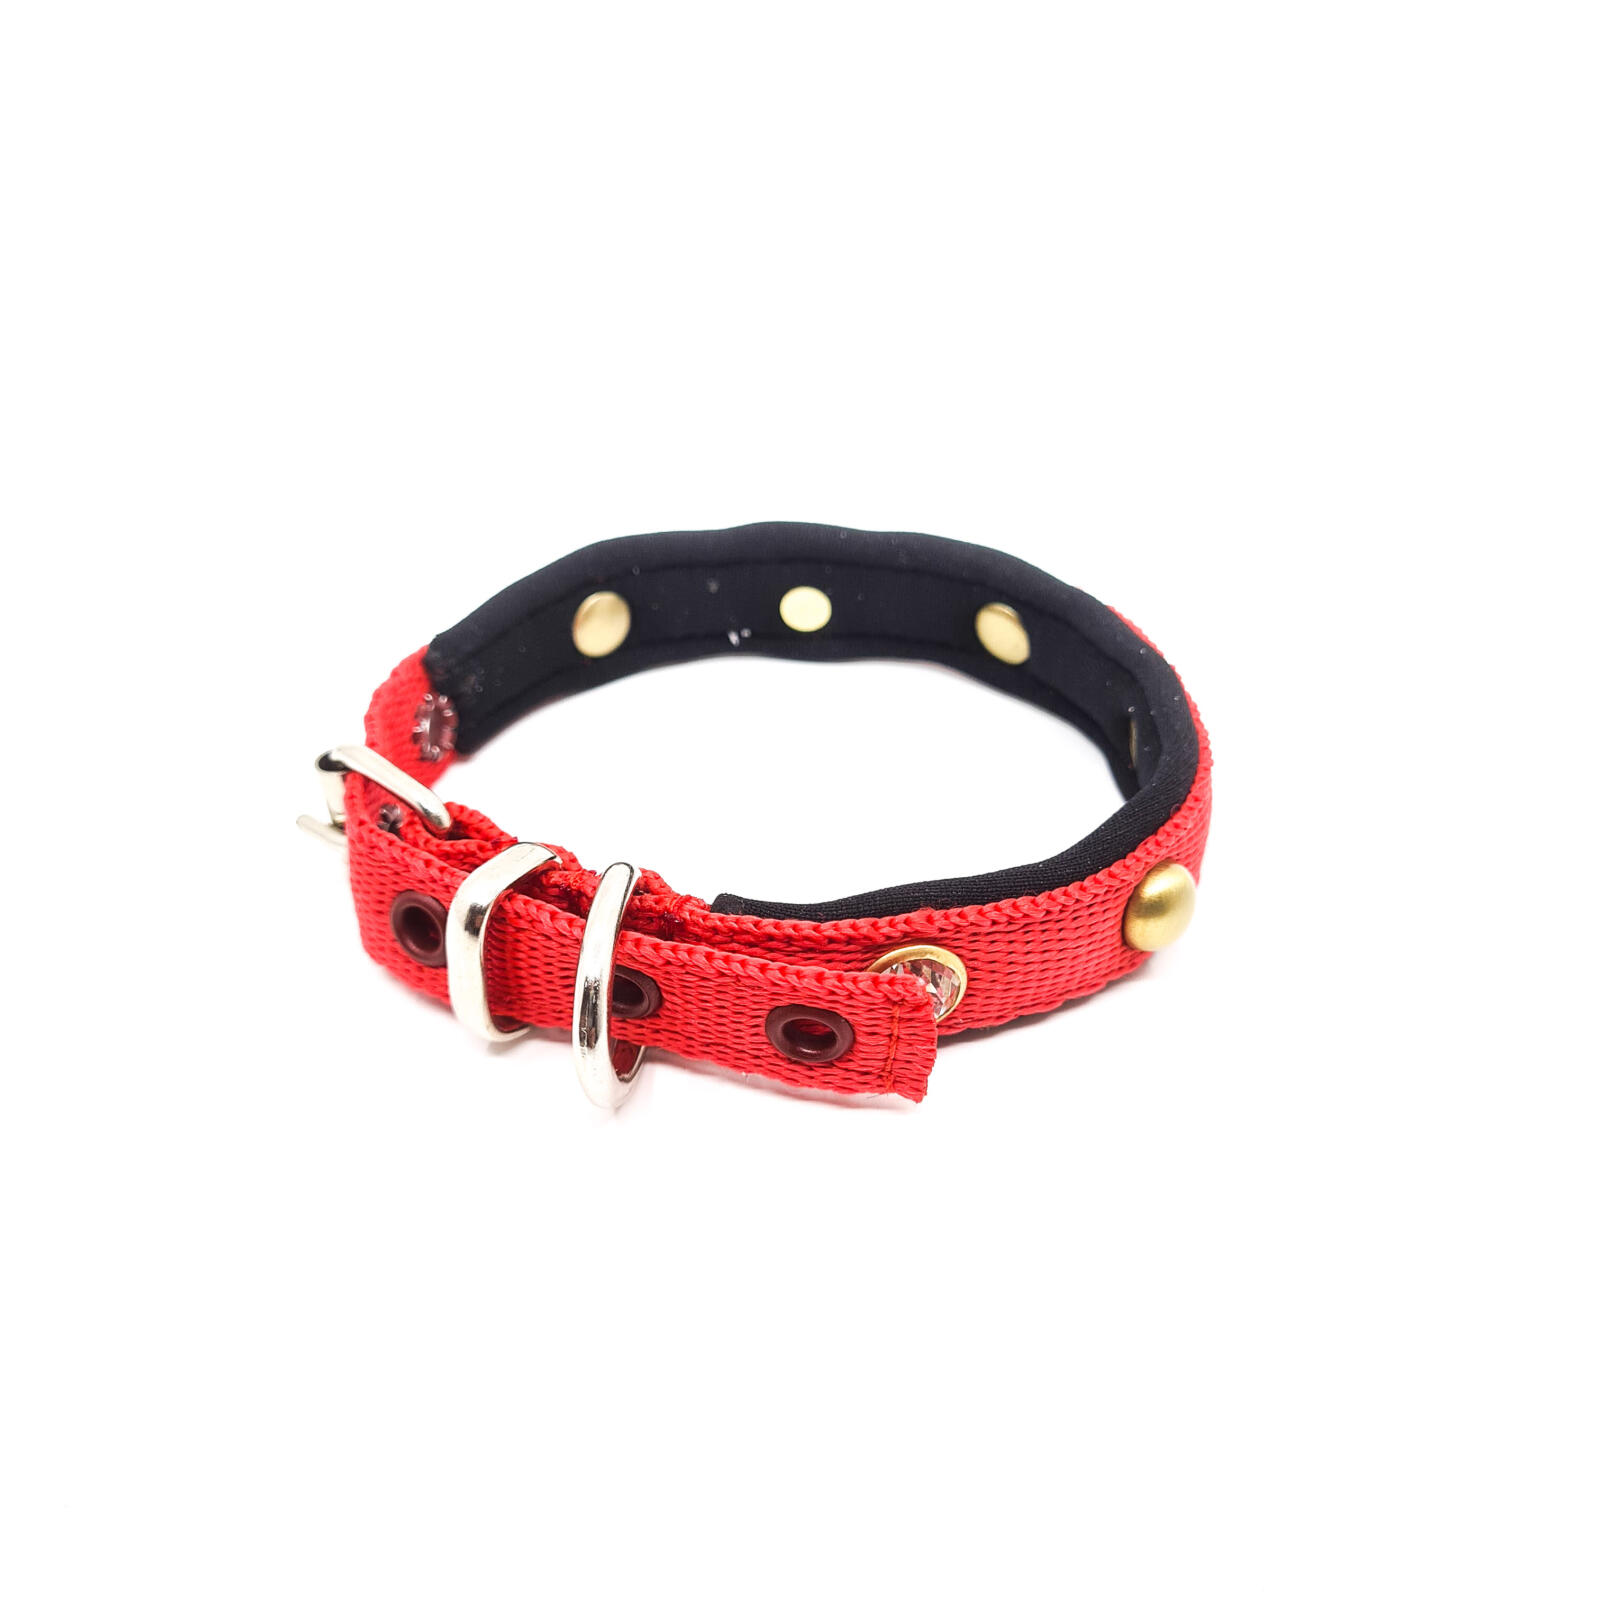 zoogdier Oceaan overschrijving Bestel online, beste kwaliteit nylon halsband voor je puppy bij Pawgarden!